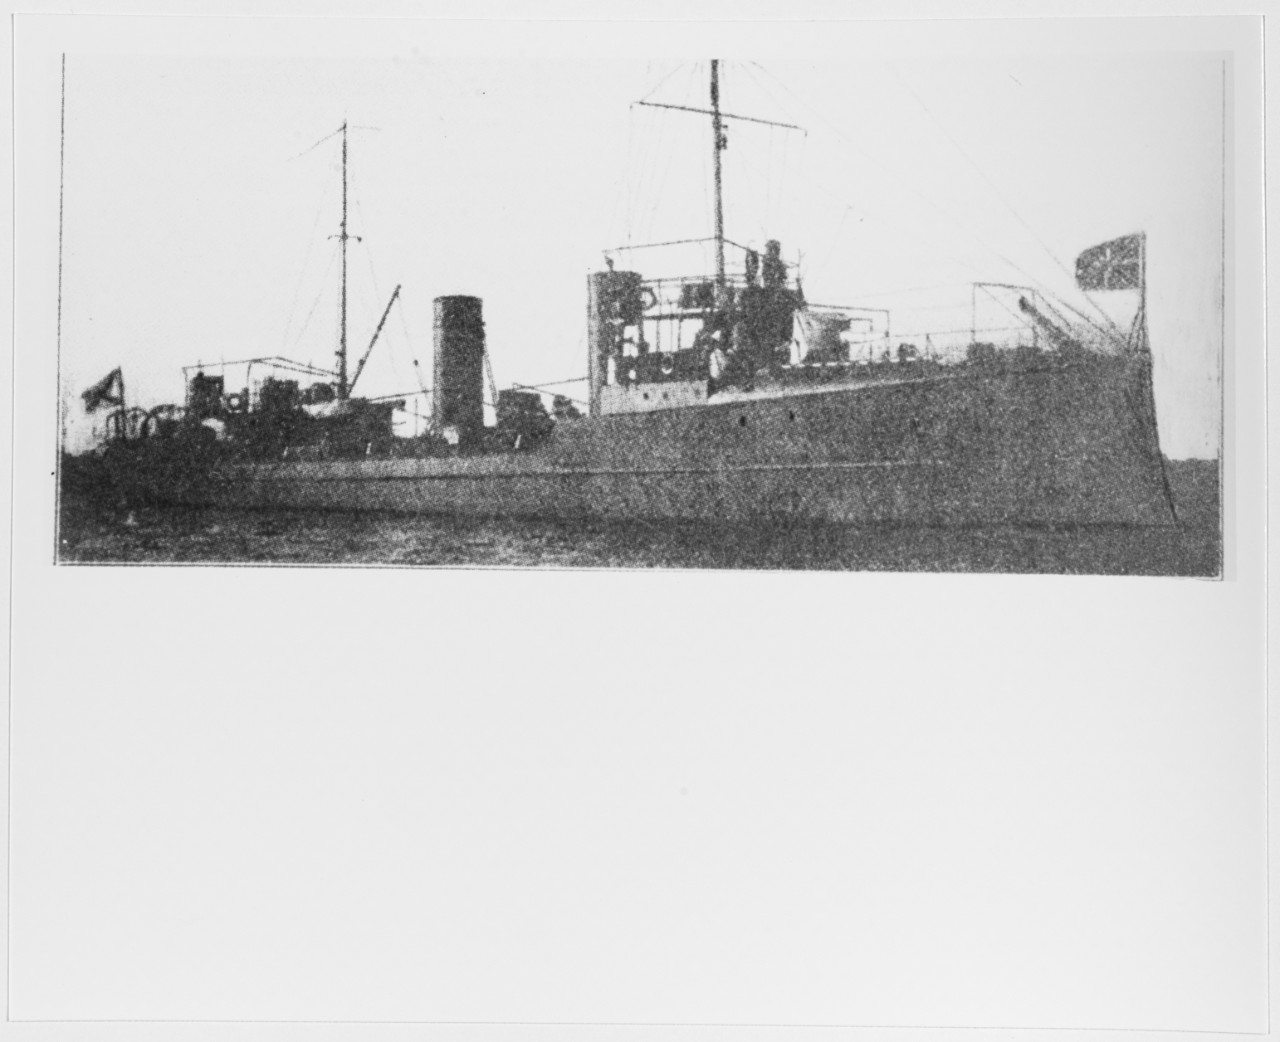 OKHOTNIK (Russian Destroyer, 1906-17)